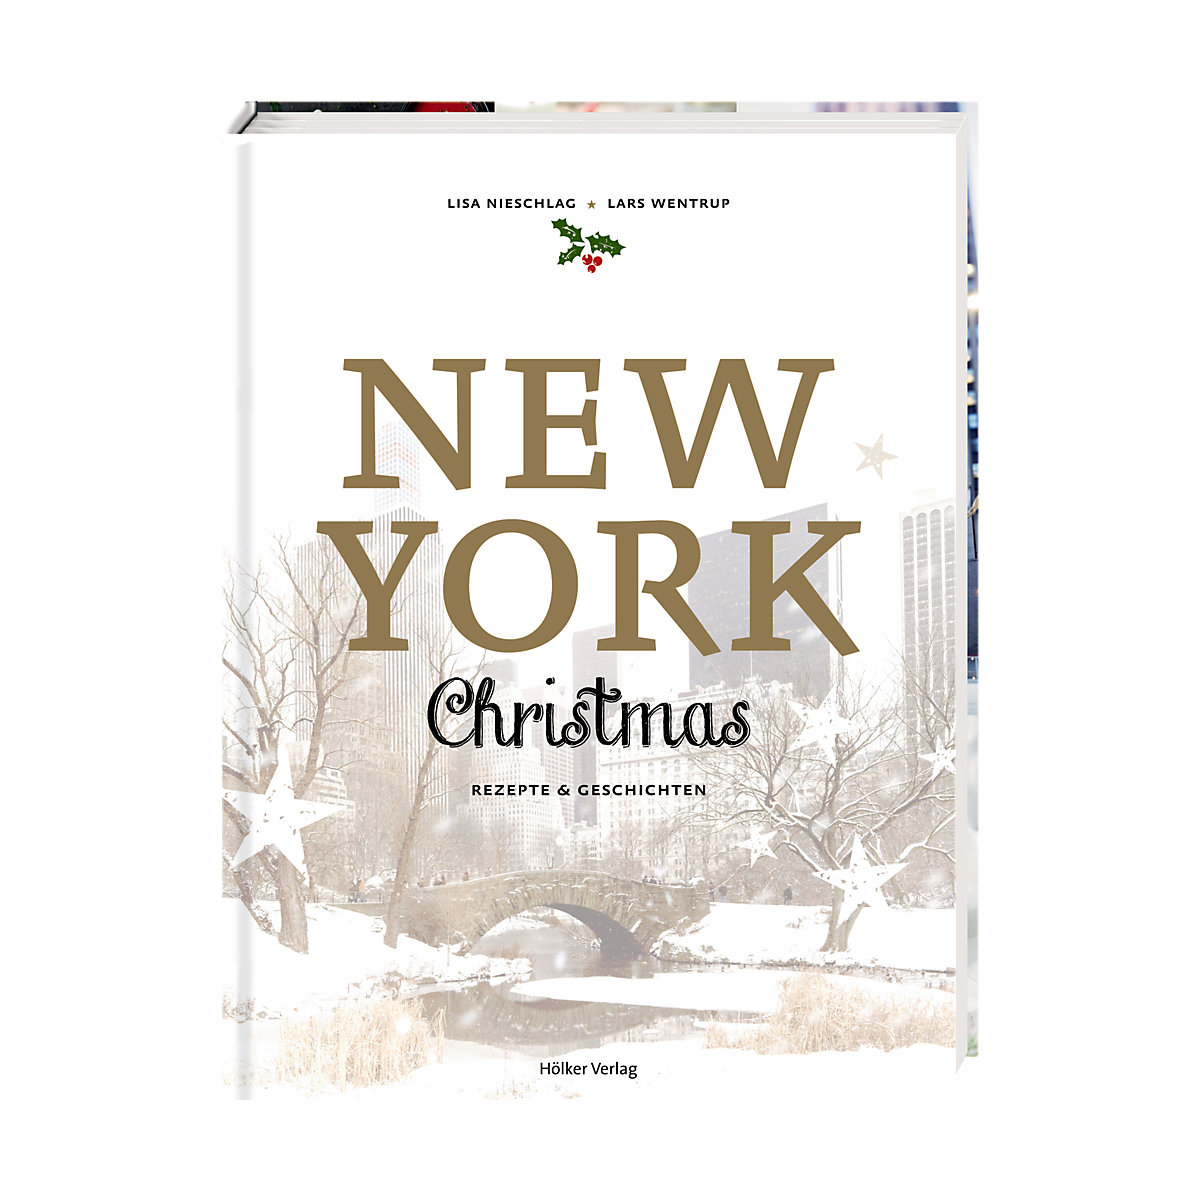 Die Spiegelburg New York Christmas Rezepte & Geschichten